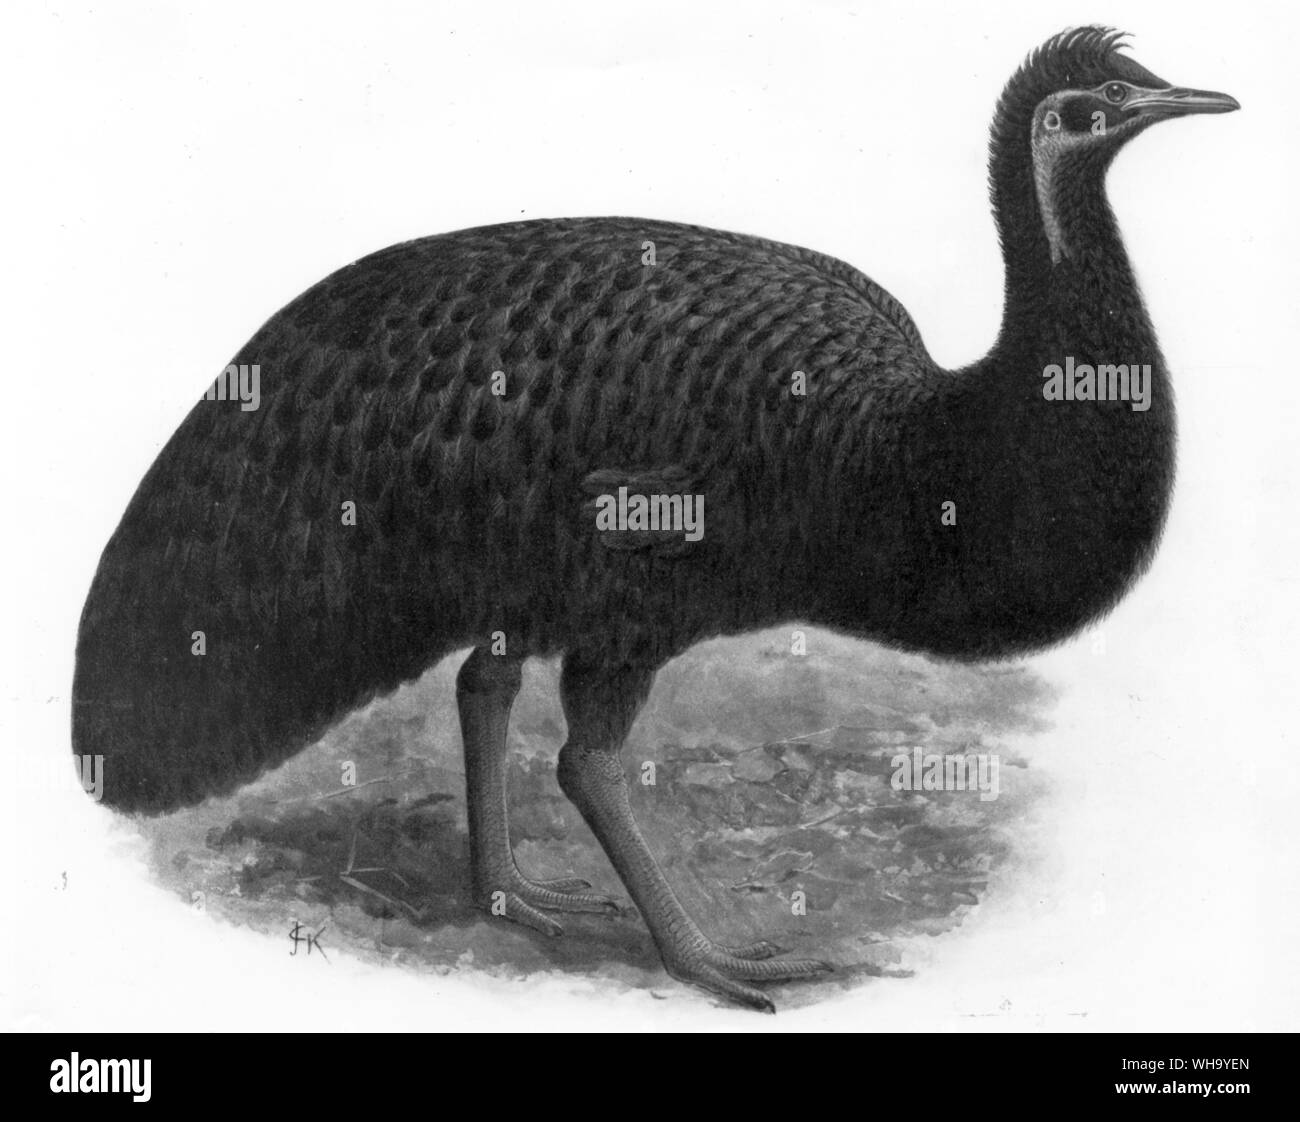 Kangaroo Island Emu ? Chromolithographie D'après une peinture par J.G. Keulemans, W. de Rothschild Extincs Birs (Londres, 1907), pl.40, avec la permission de l'honorable Miriam Rothschild Banque D'Images